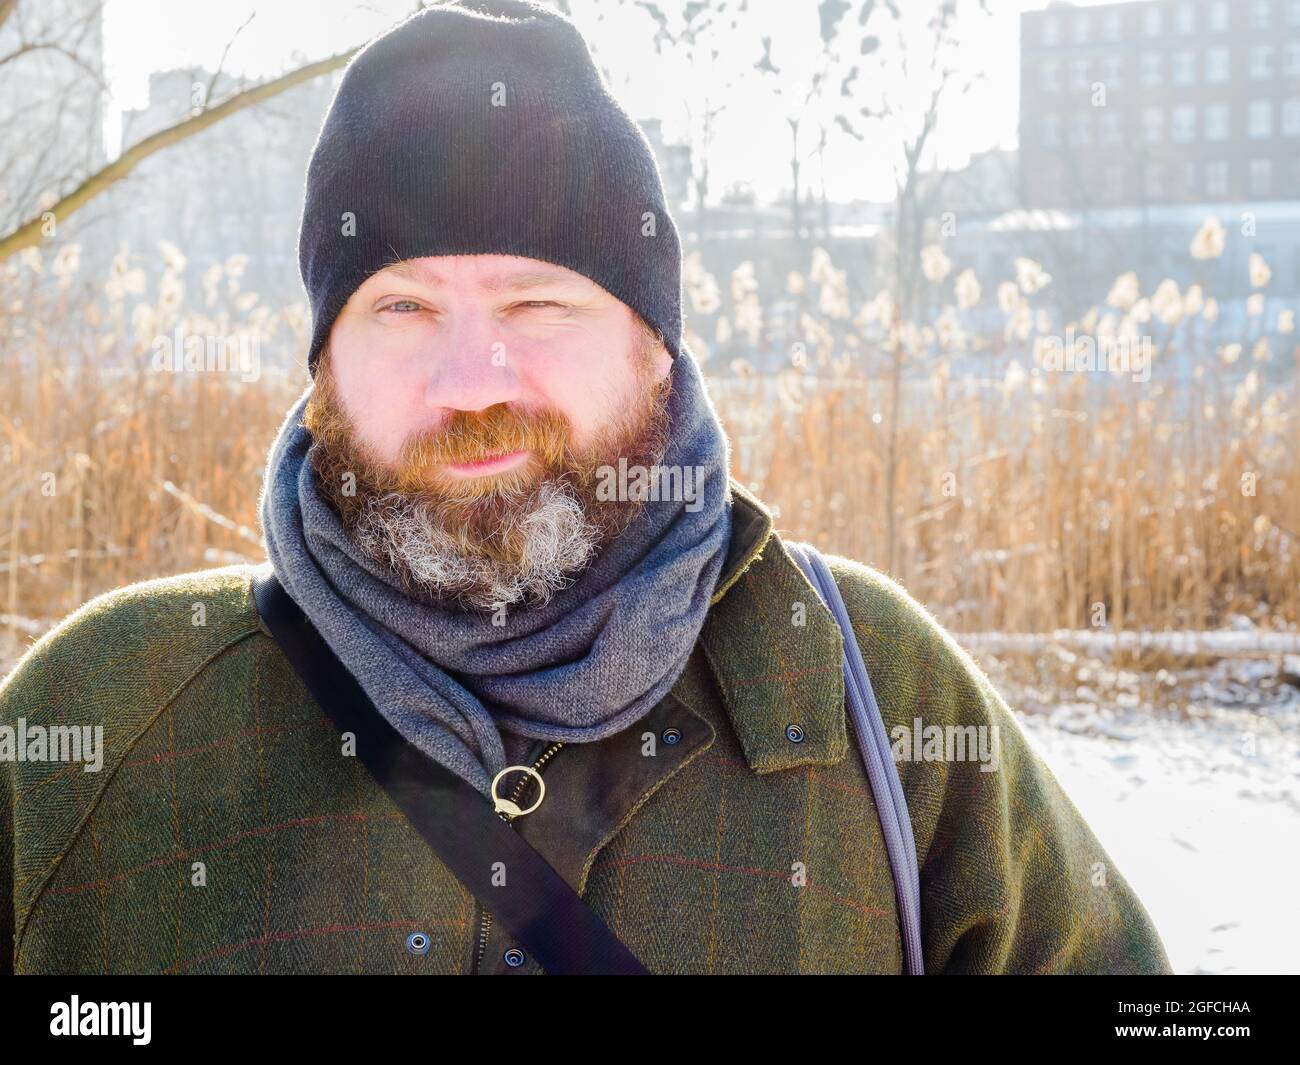 Ritratto all'aperto di uomo europeo adulto in inverno. Uomo bearded che si distende sulla passeggiata di inverno nella foresta nevosa, cattura candid, scena di lifestyle Foto Stock